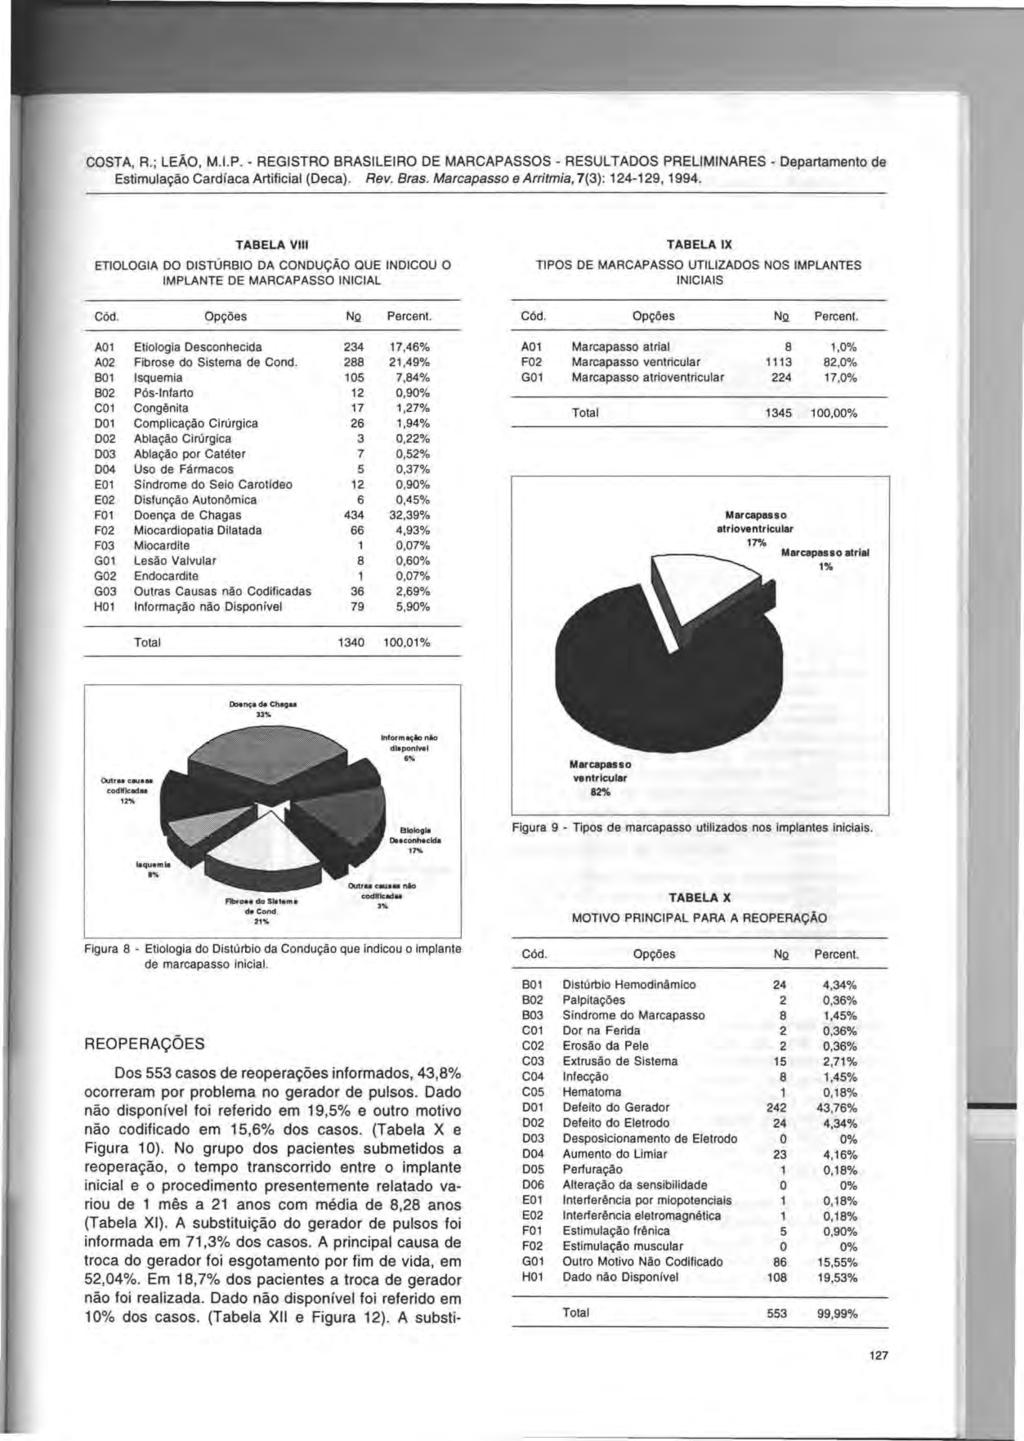 COSTA, R.; LEAO, M.I.P. - REGISTRO BRASILEIRO DE MARCAPASSOS - RESULTADOS PRELIMINARES - Departamento de Estimula~ao Cardfaca Artificial (Deca). Rev. Bras. Marcapasso e Arritmia, 7(3): 124-129, 1994.